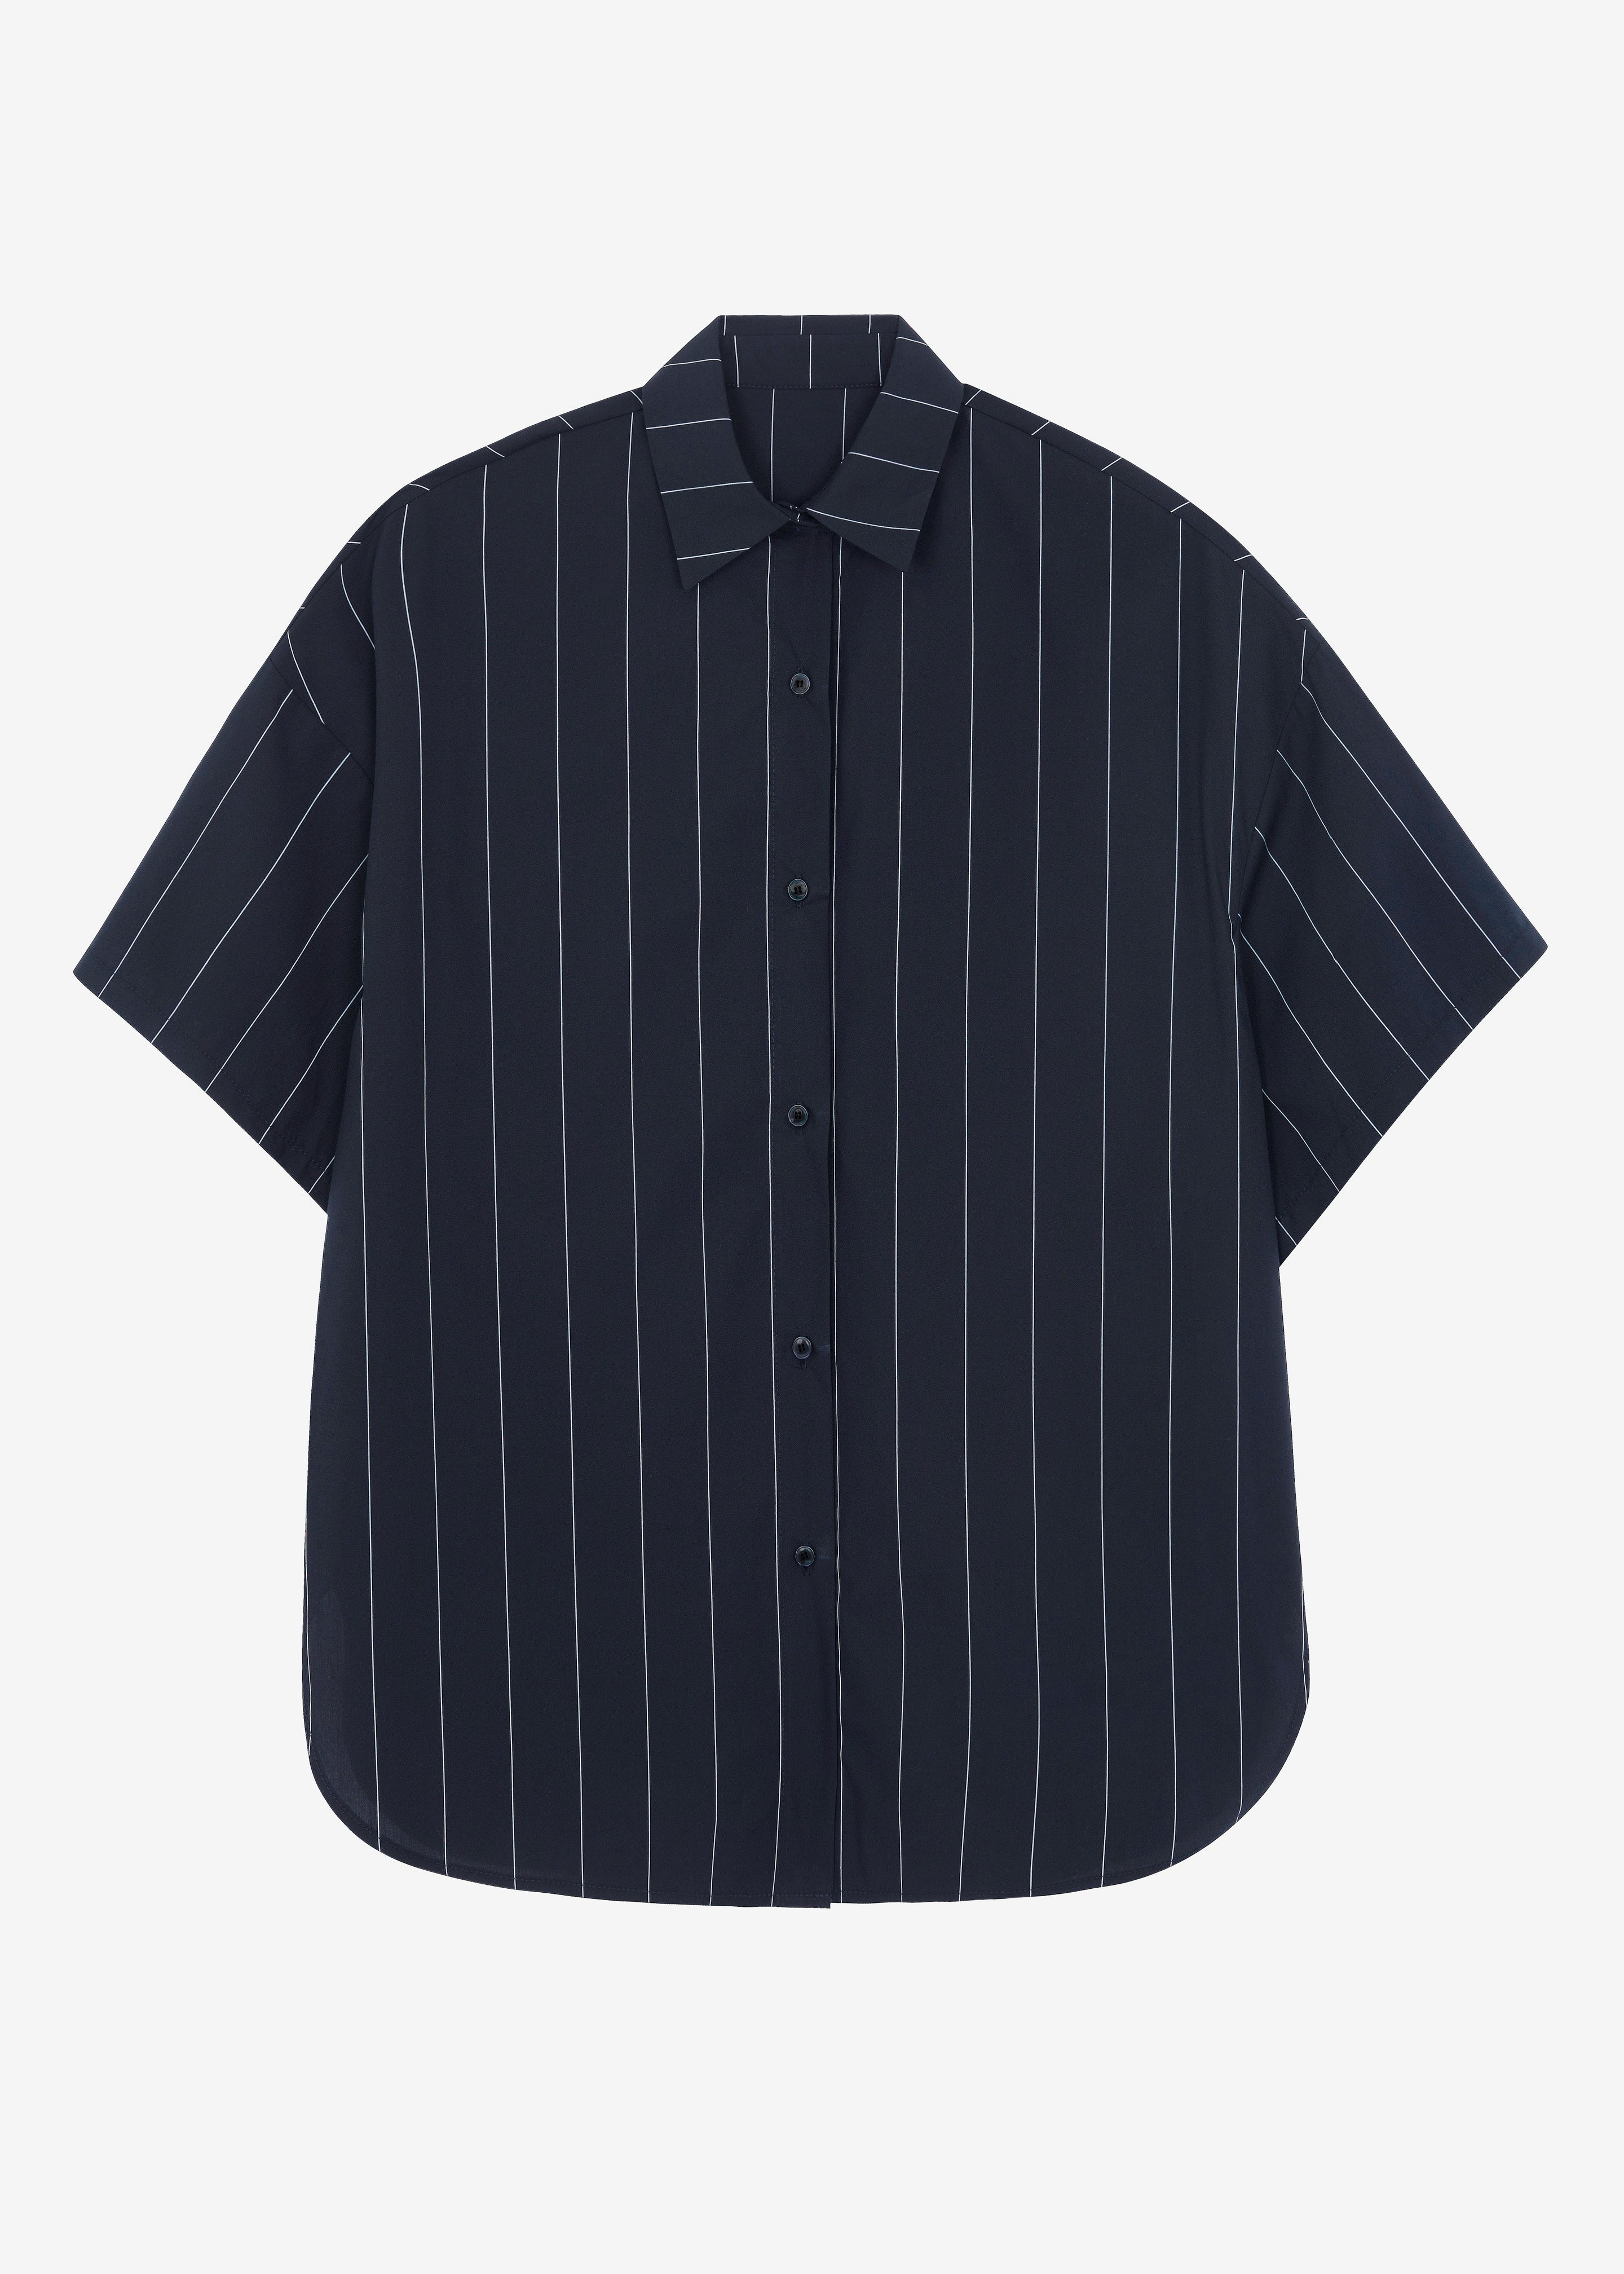 Finn Button Up Shirt - White Stripe - 10